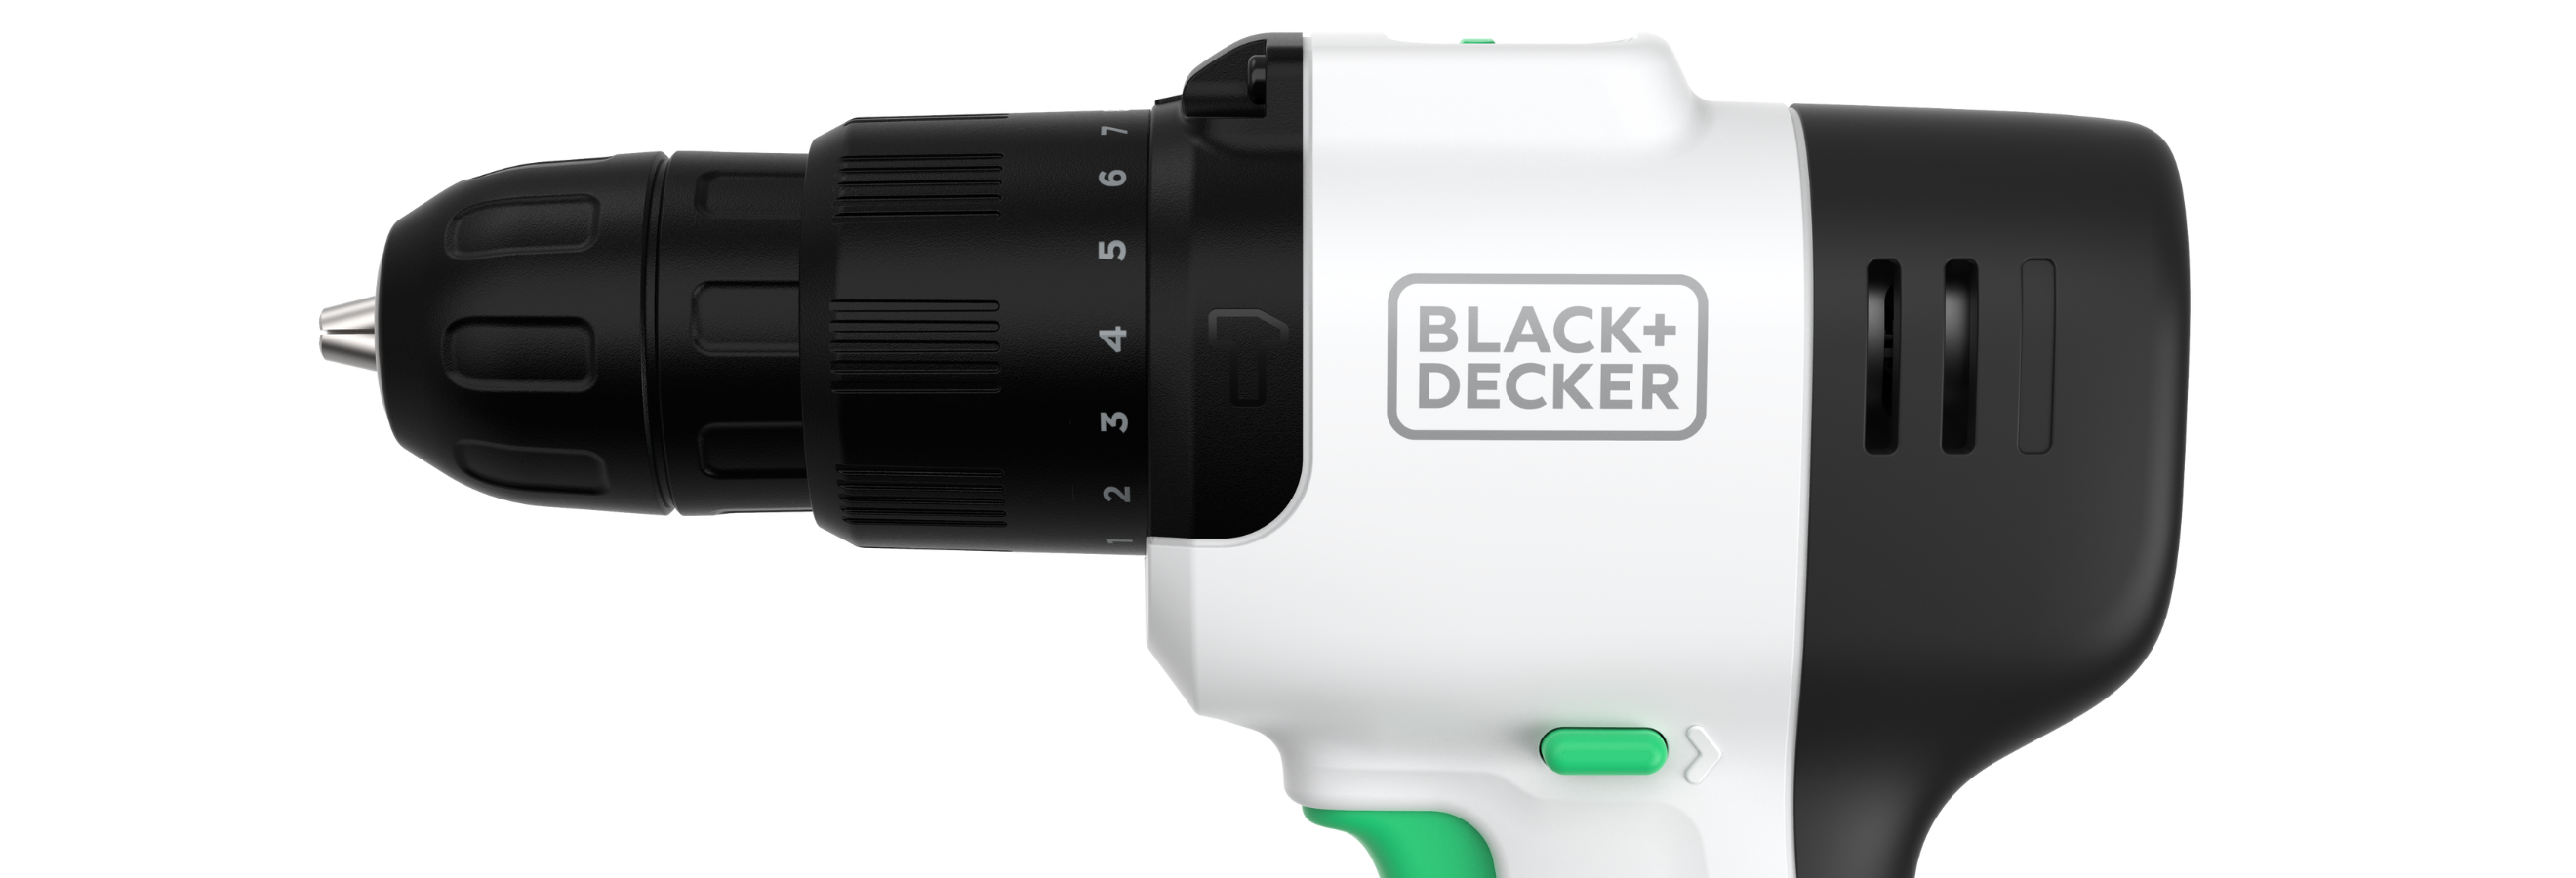 BLACK+DECKER Reviva 12V Hammer Drill (REVCHD12C), 1 - Kroger